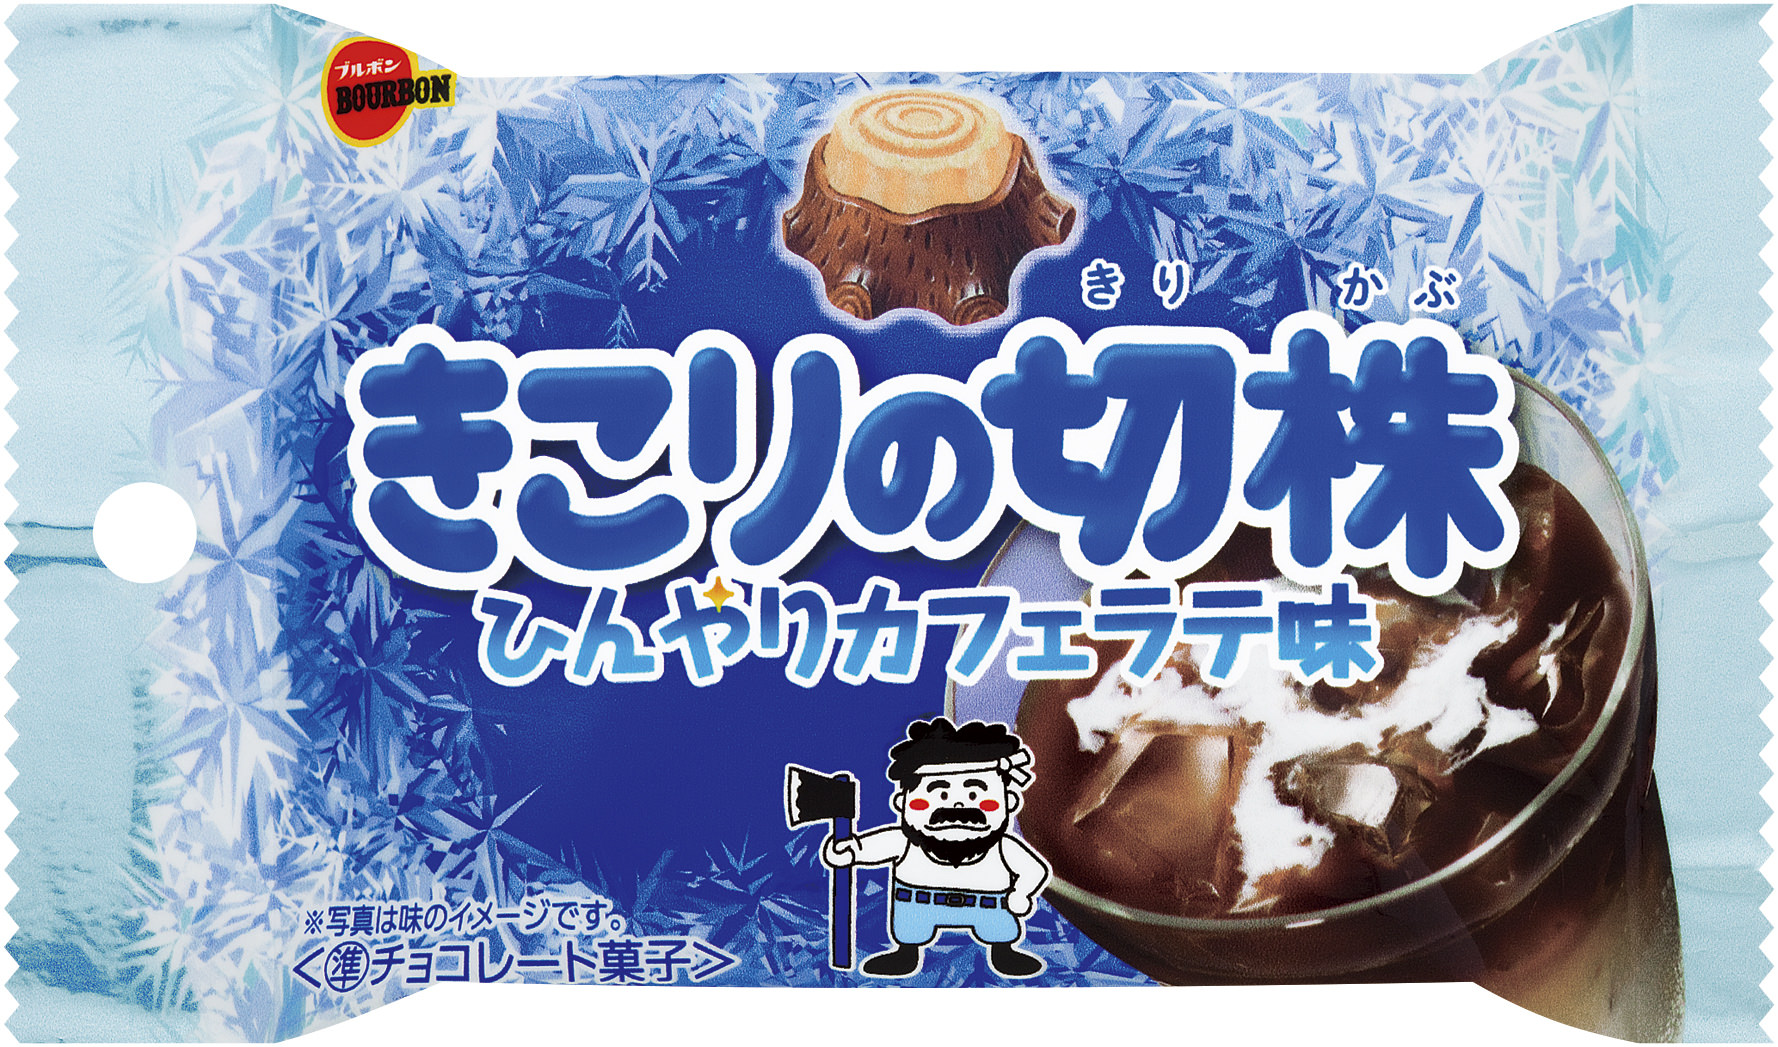 山本ゆりさん、Mizukiさんら人気料理ブロガーの
“おいしい冷凍テク”を大公開！
新刊「レシピブログ 大人気の冷凍レシピ＆テクニック」発売